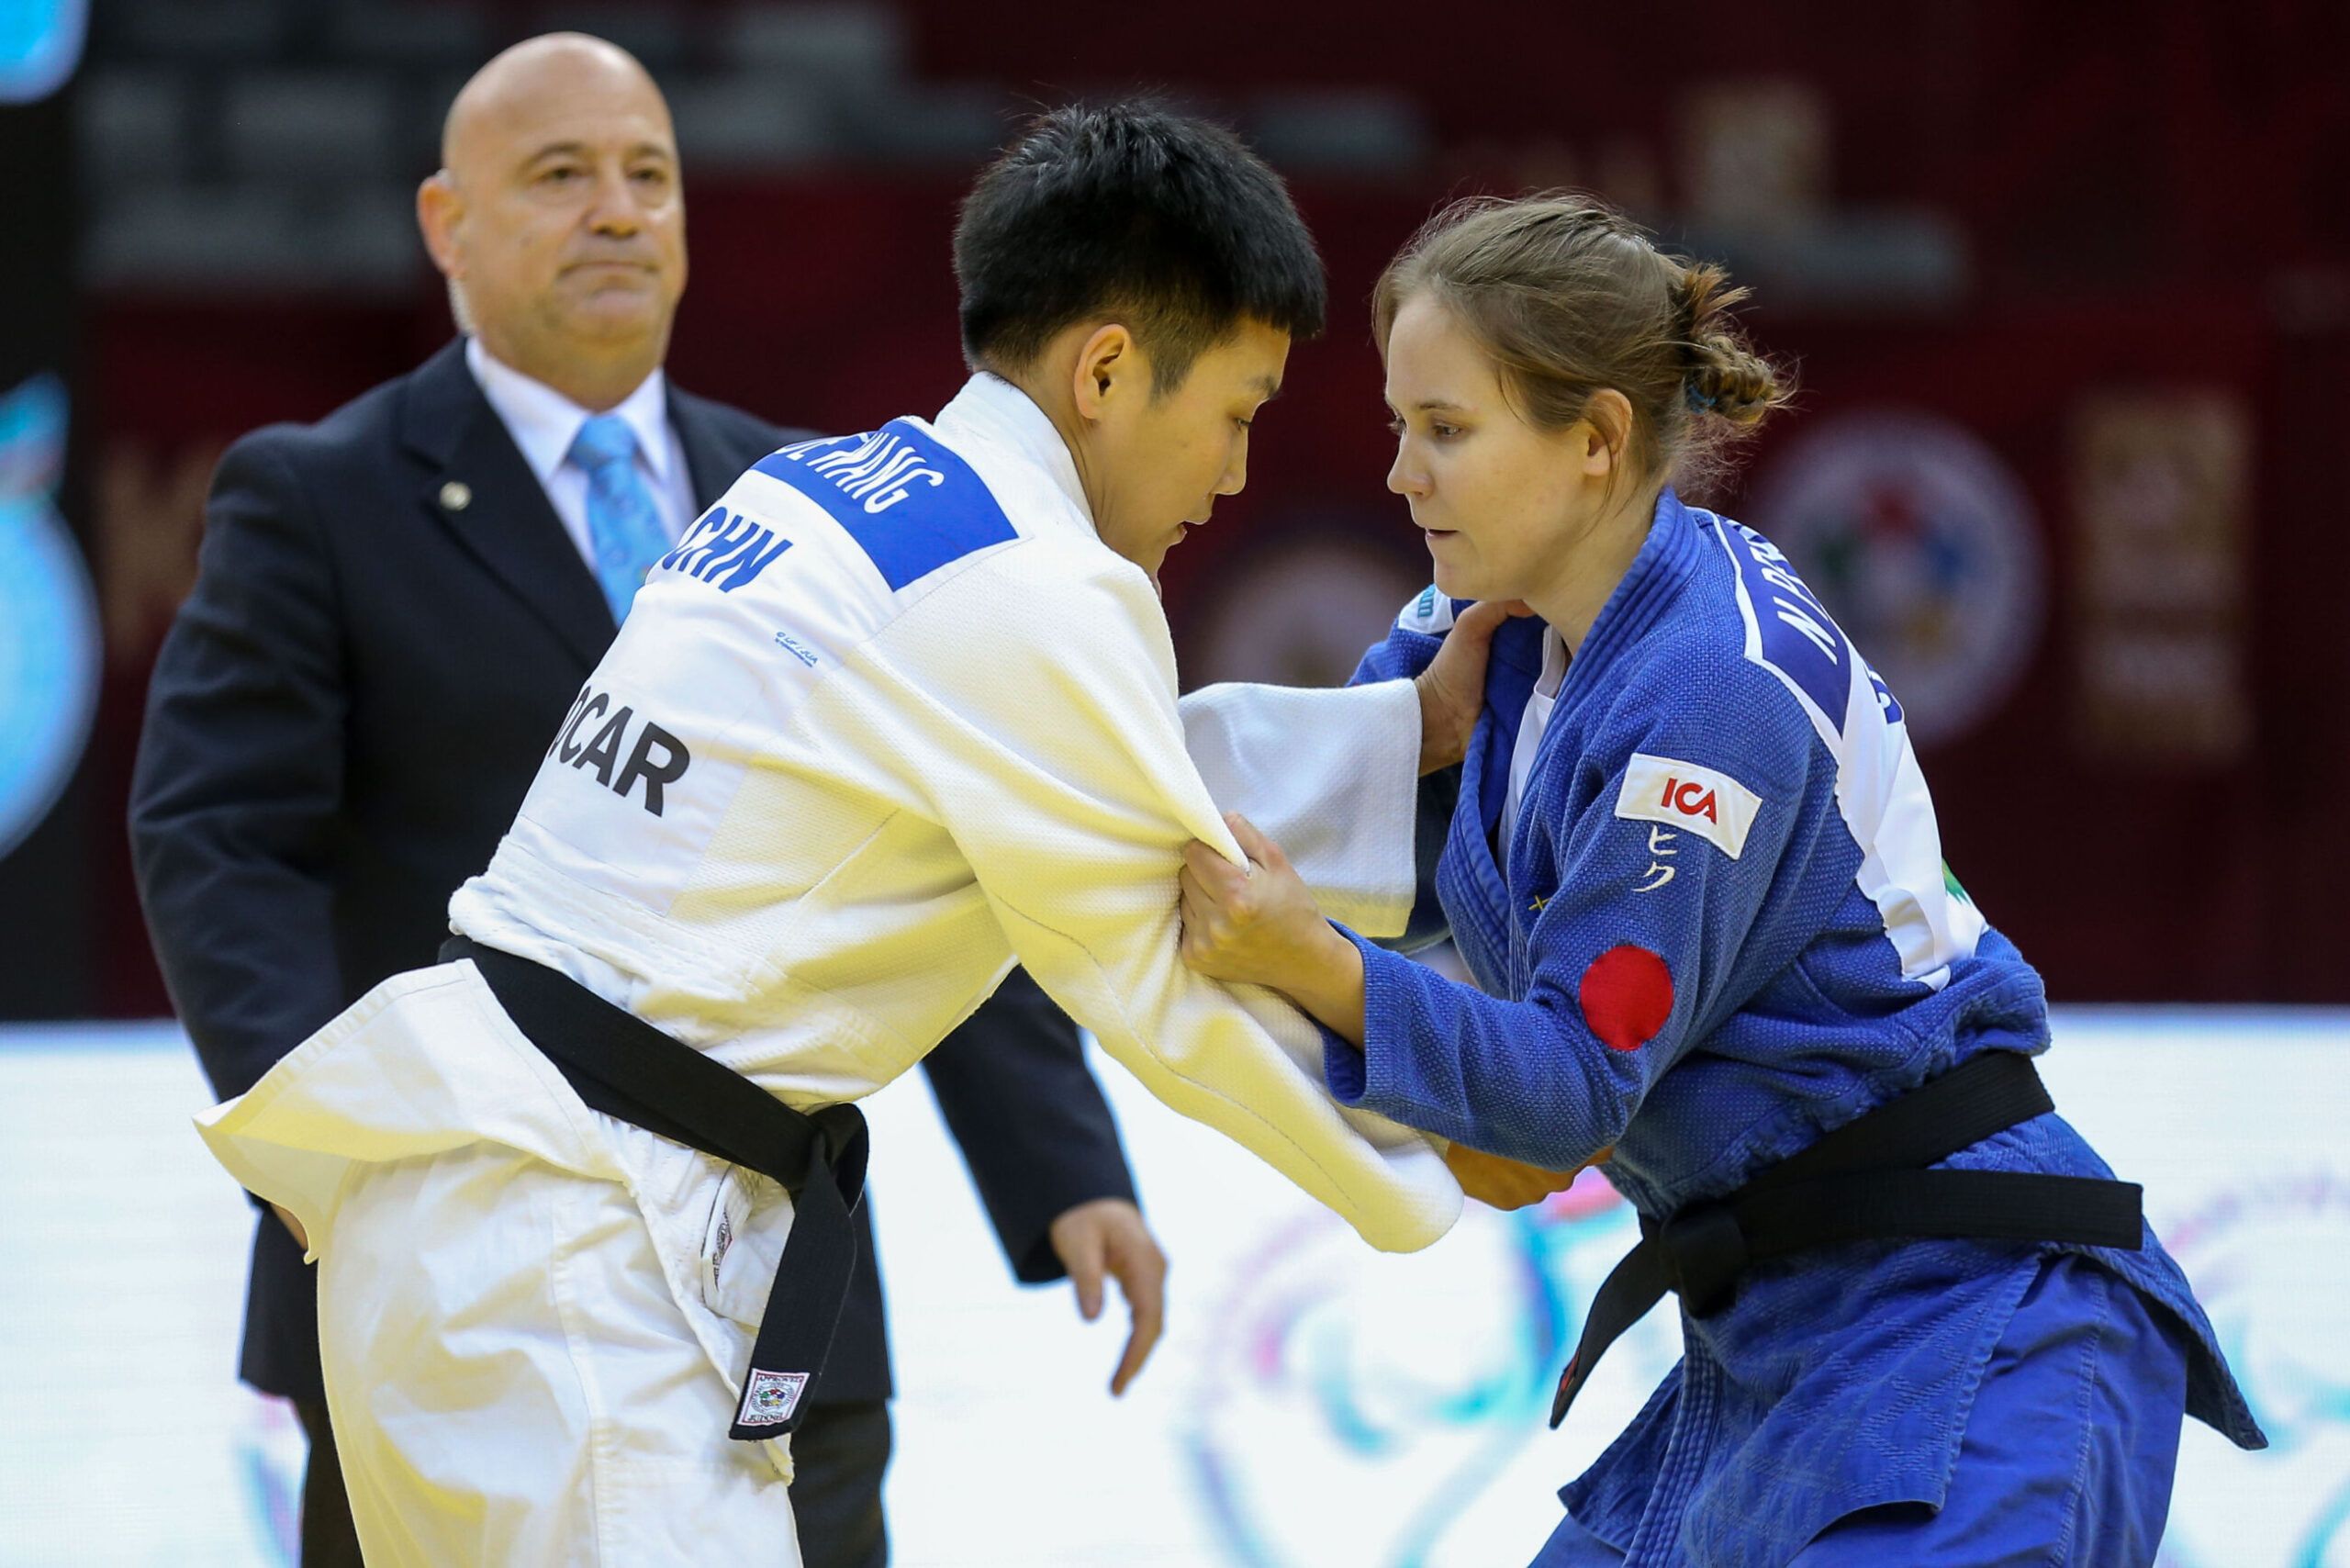 Nicolina Pernheim greppar motståndaren i en match på Grand Prix i Baku 2019. Båda står upp. I bakgrunden syns en domare.